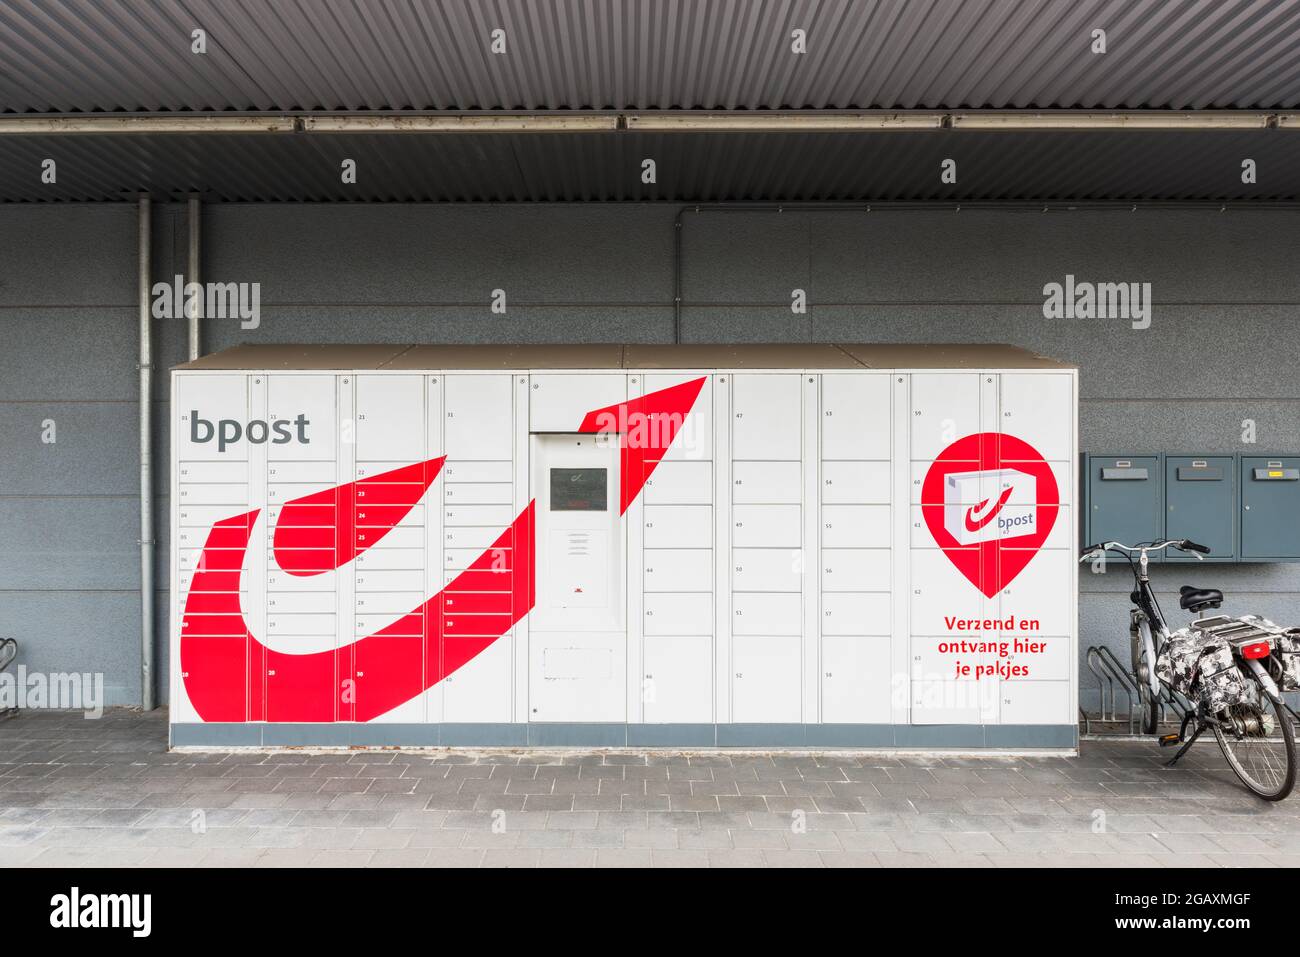 Bpost correo al aire libre y cajas de paquetes cerca de un centro comercial en Zwijndrecht, Flandes, Bélgica. Bpost también es conocido como Belgian Post Group. Foto de stock